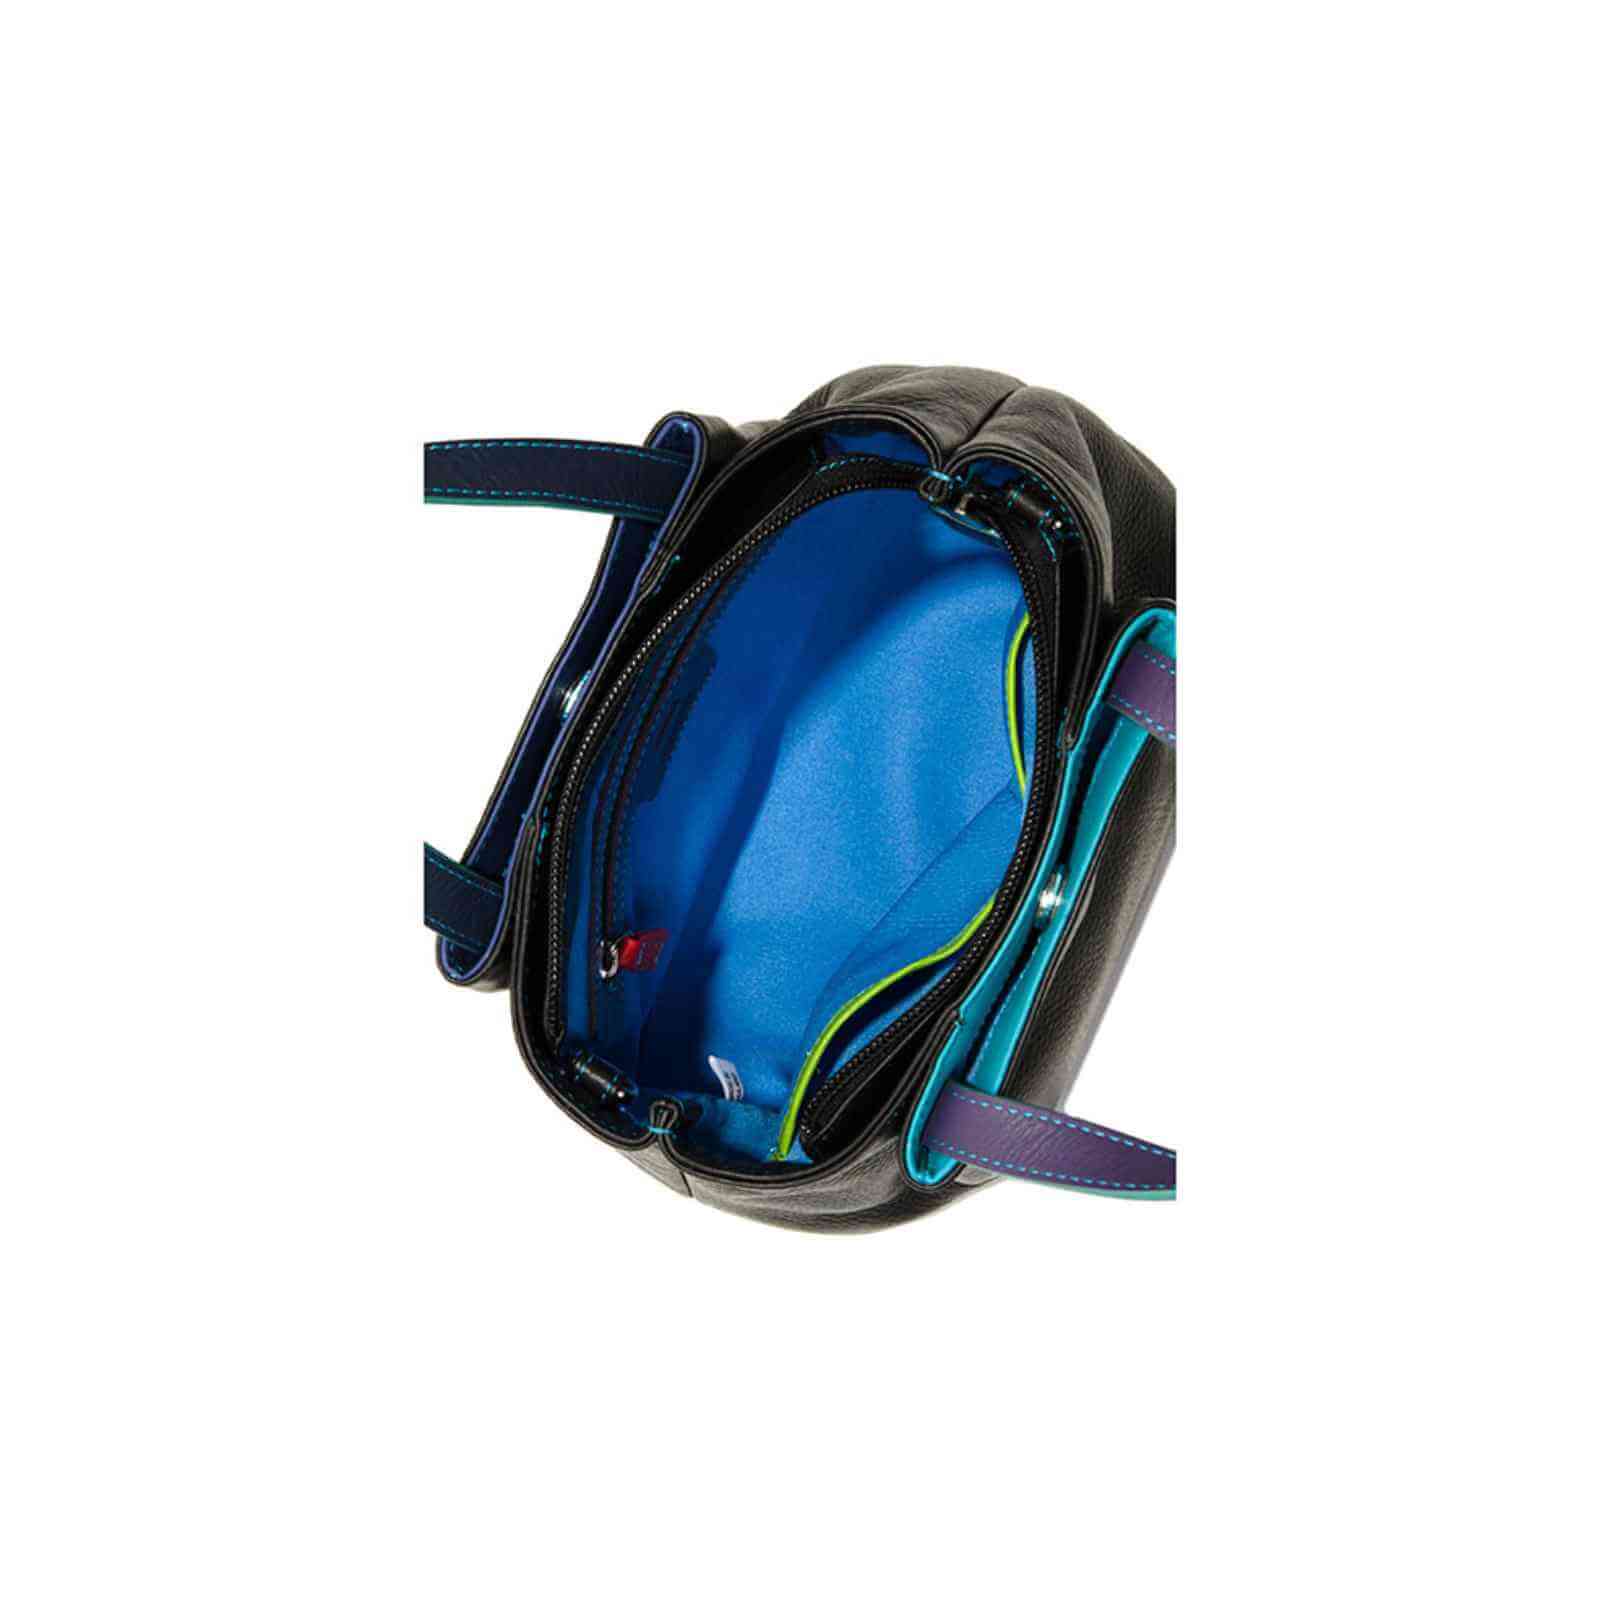 Lille sort håndtaske fra MyWalit med blåt indvendigt foer